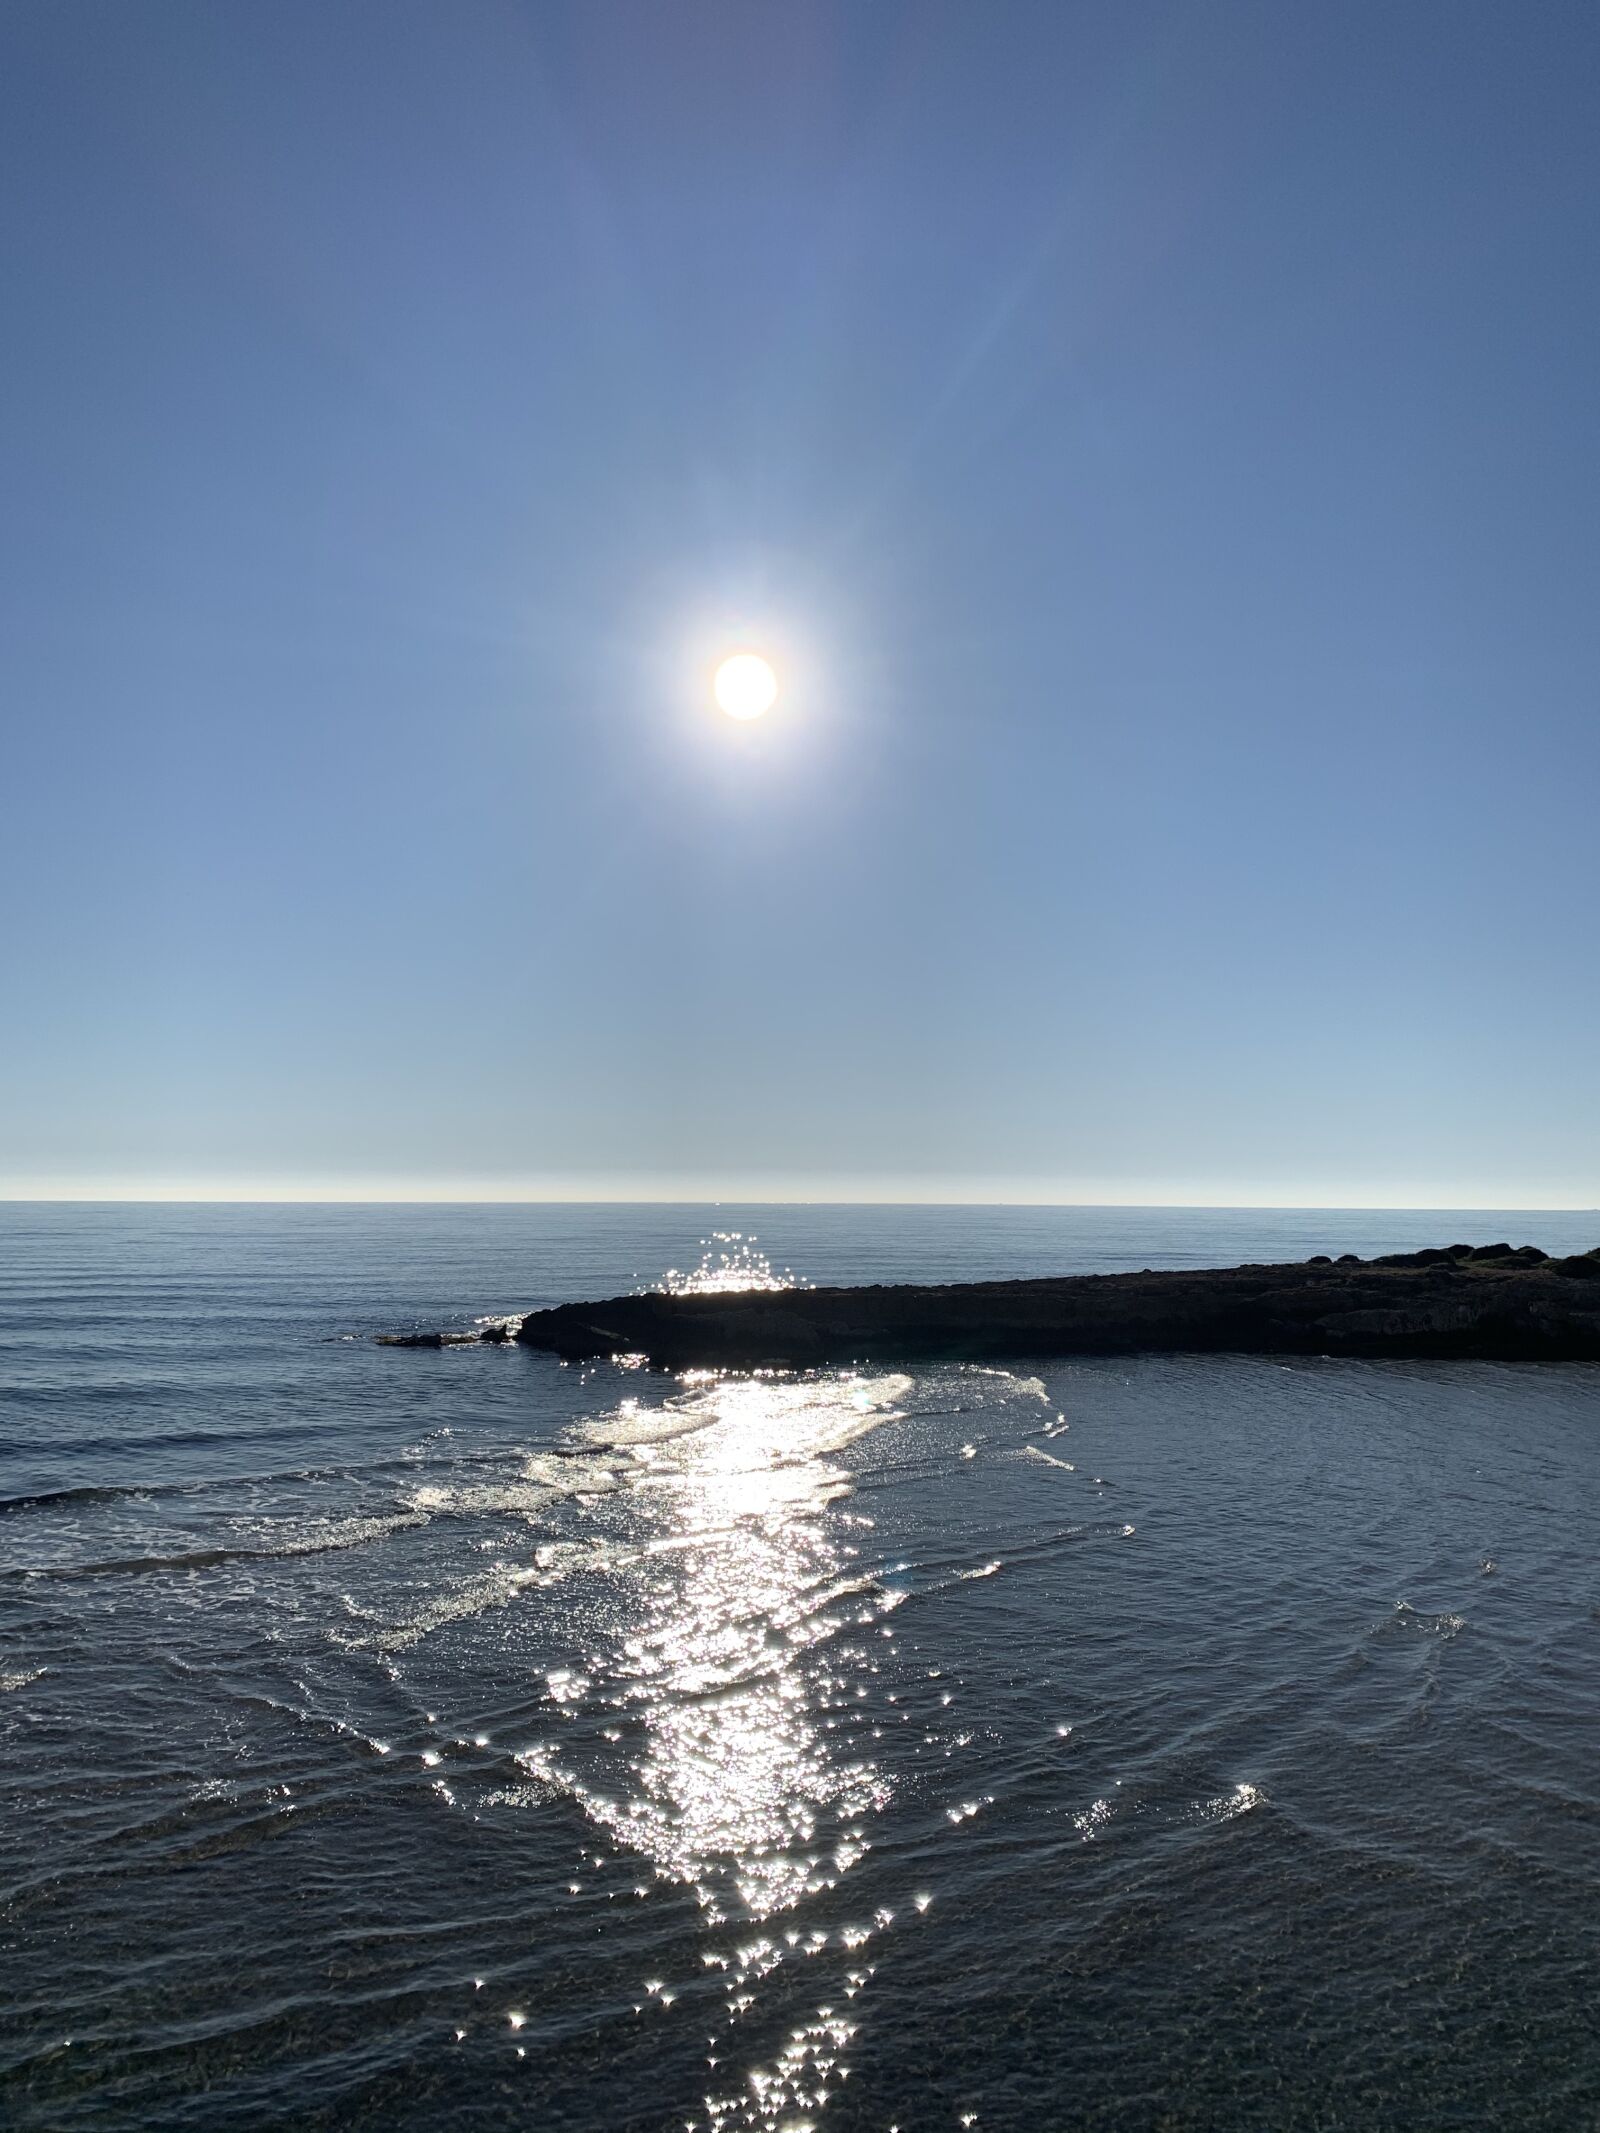 Apple iPhone XR sample photo. Sun, blue sky, ocean photography